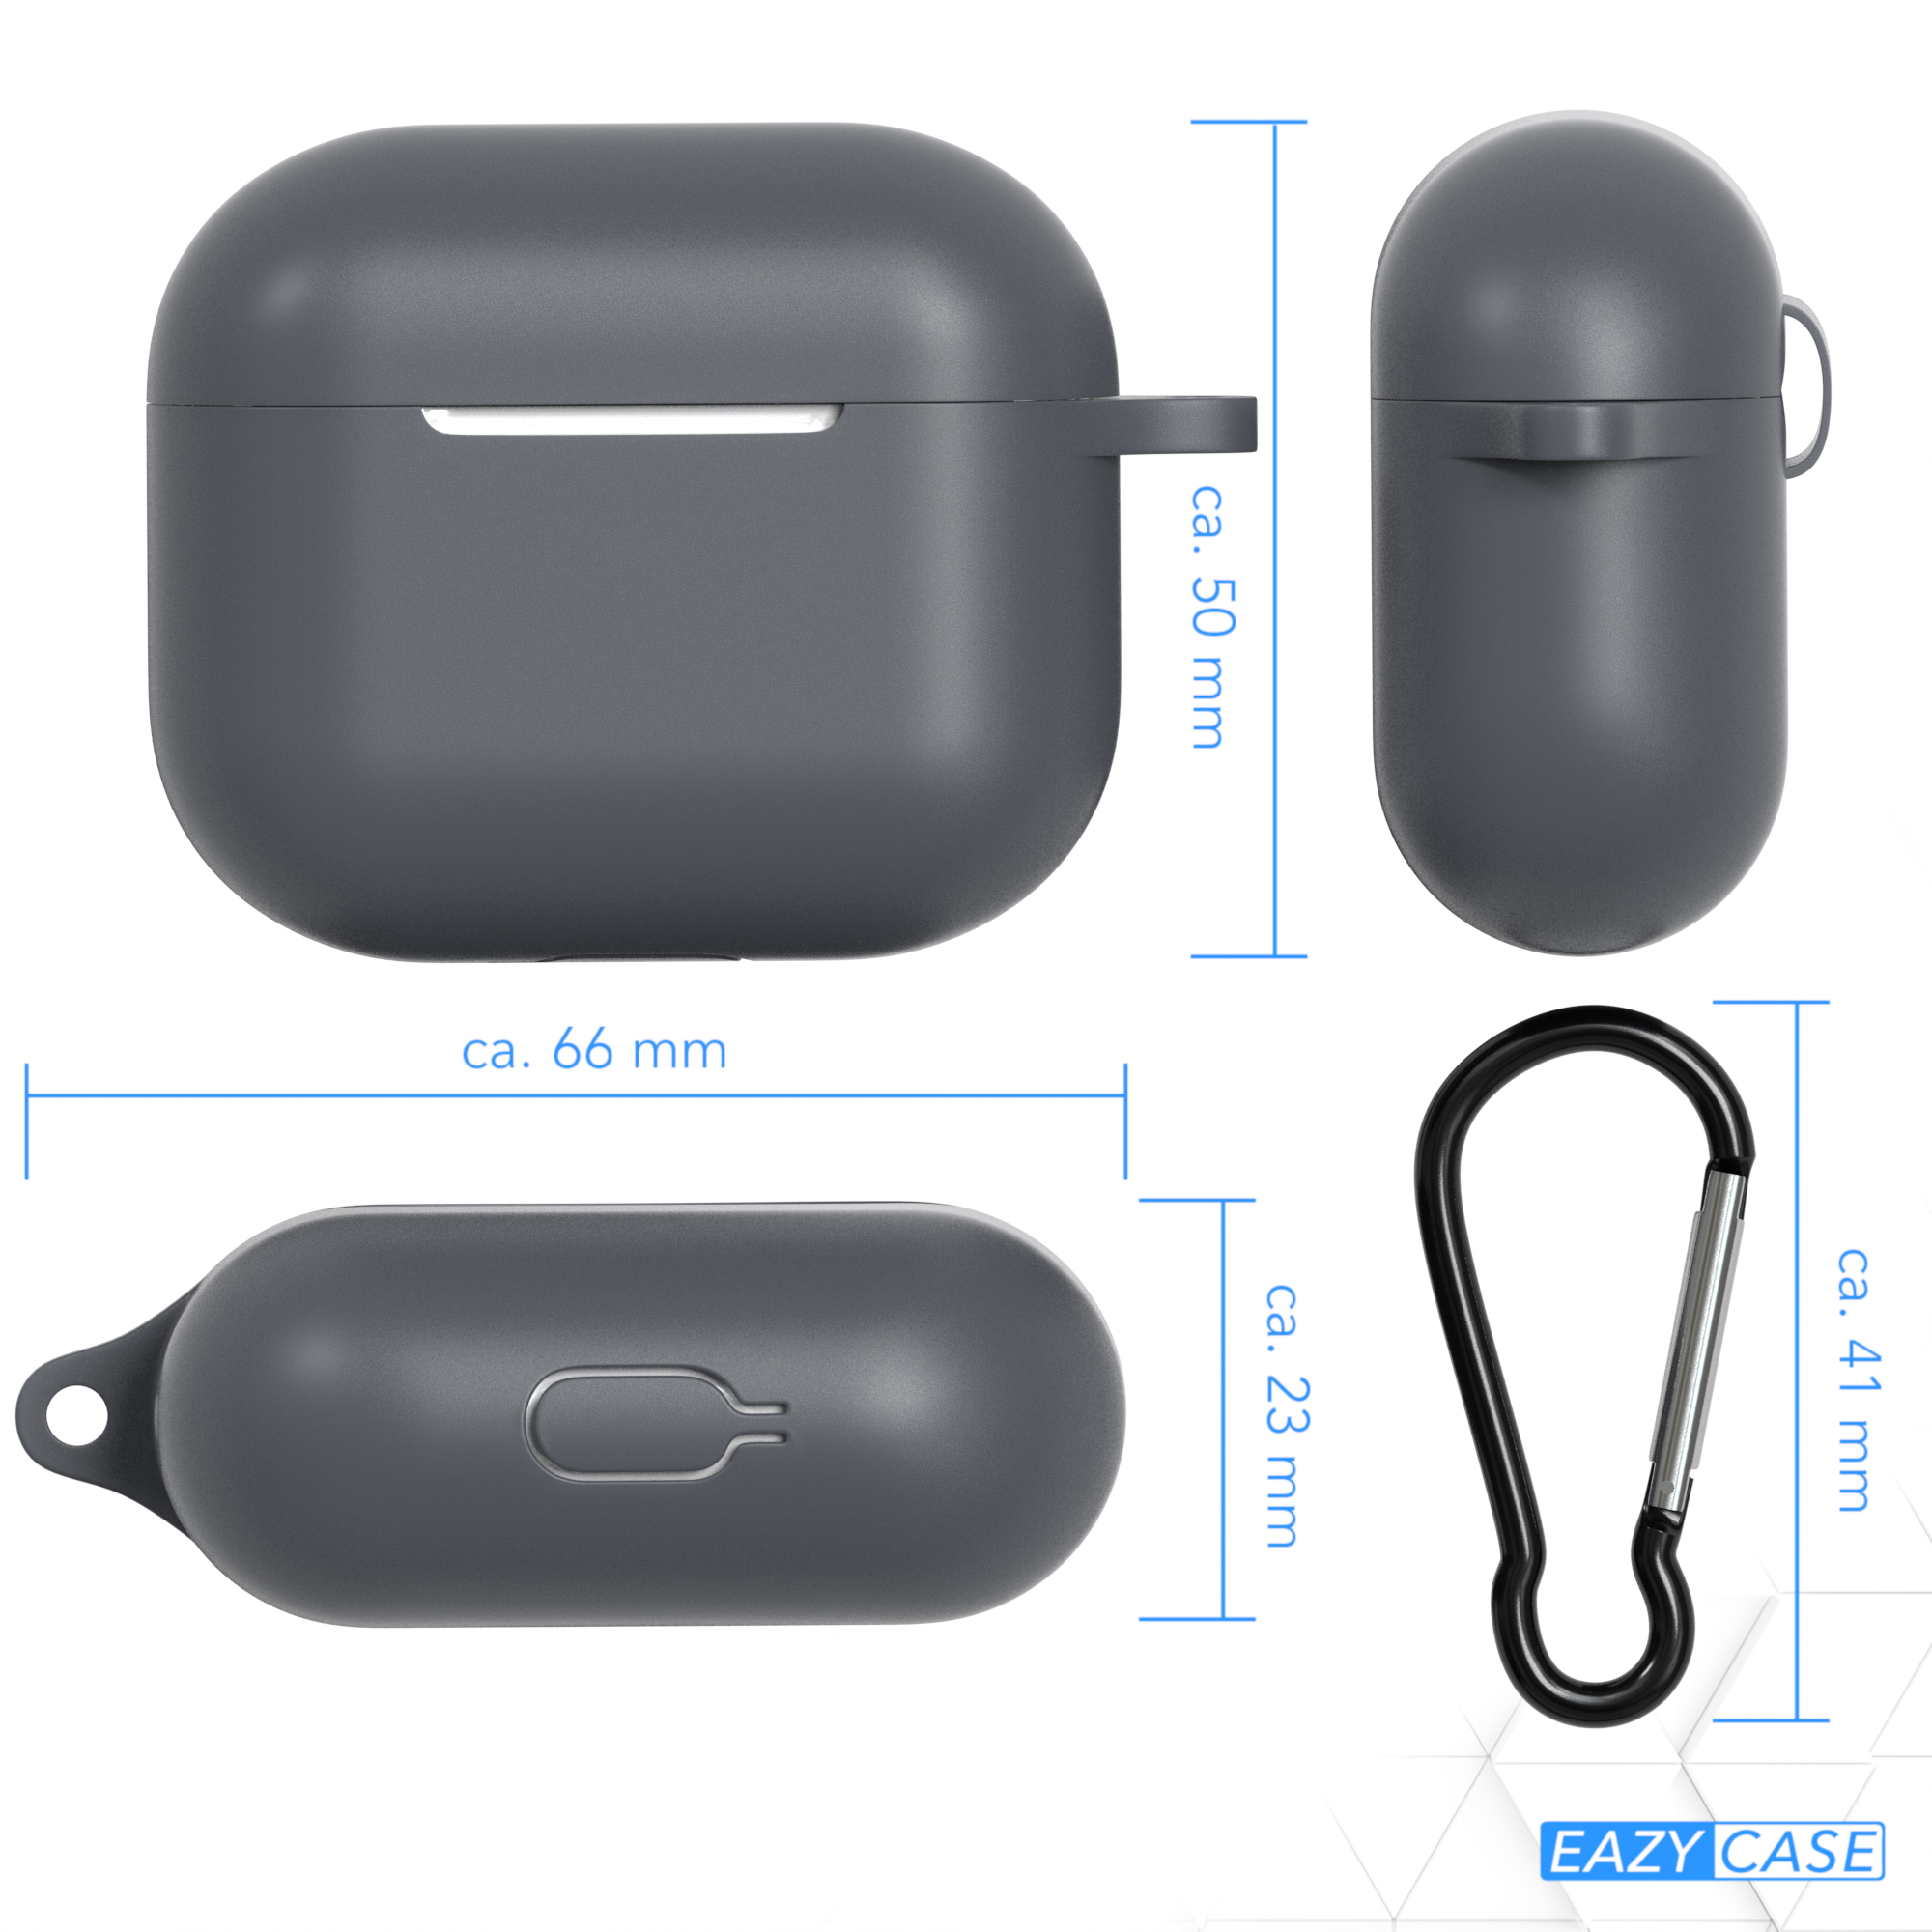 EAZY CASE AirPods Apple Case Schutzhülle Sleeve Grau Anthrazit Silikon 3 passend für